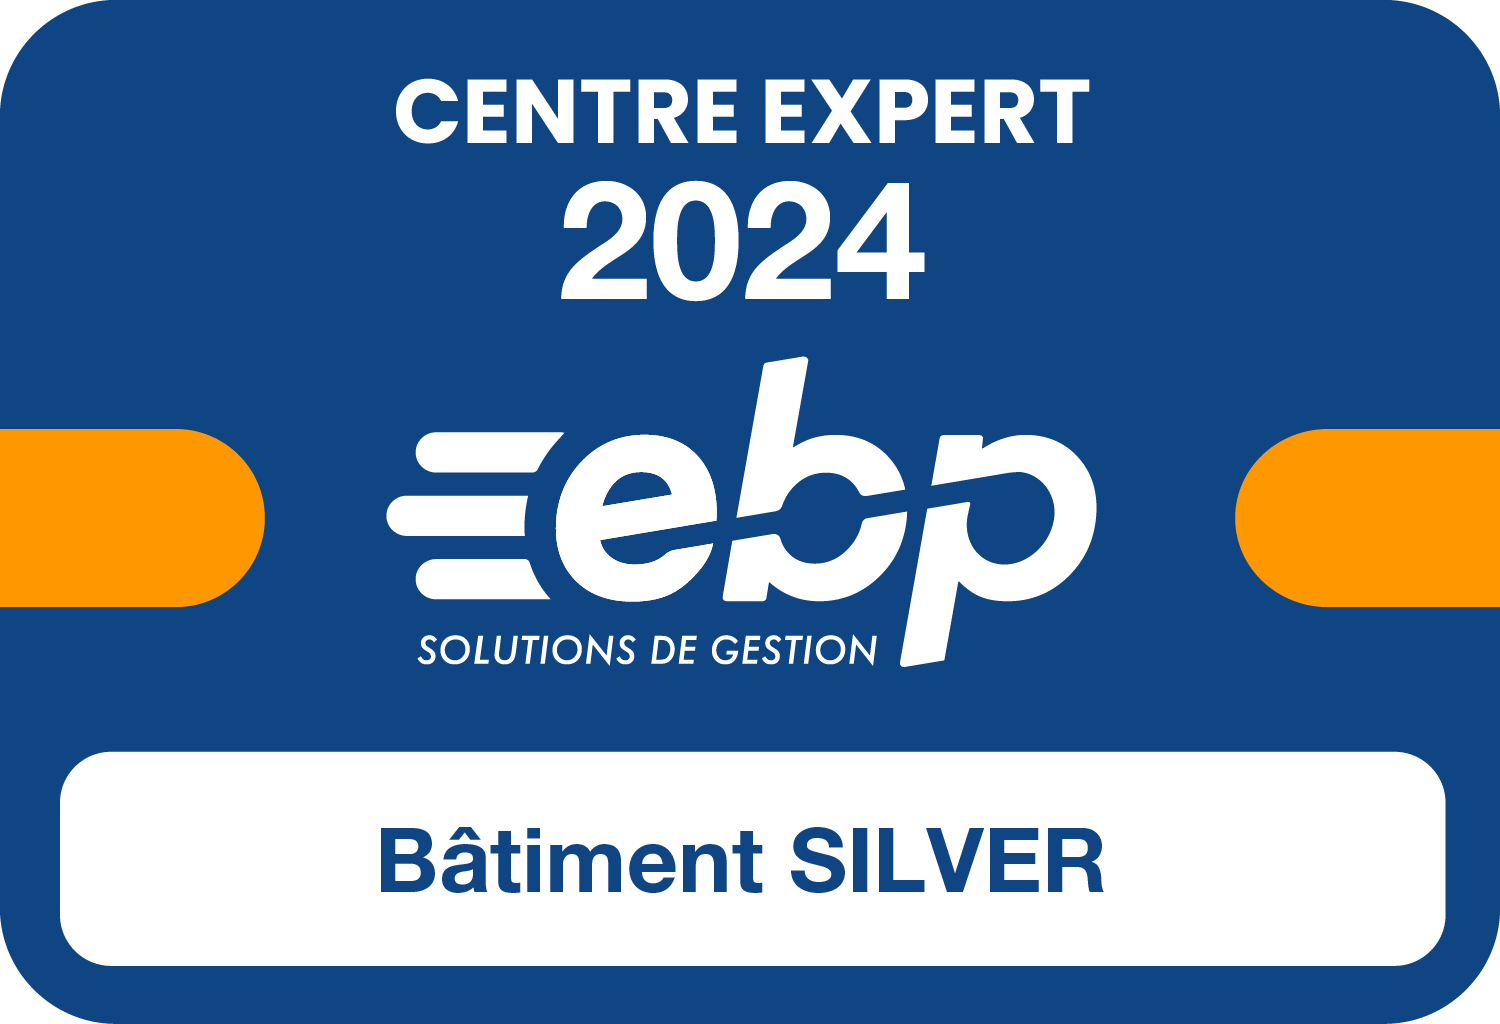 EBP Batiment Silver